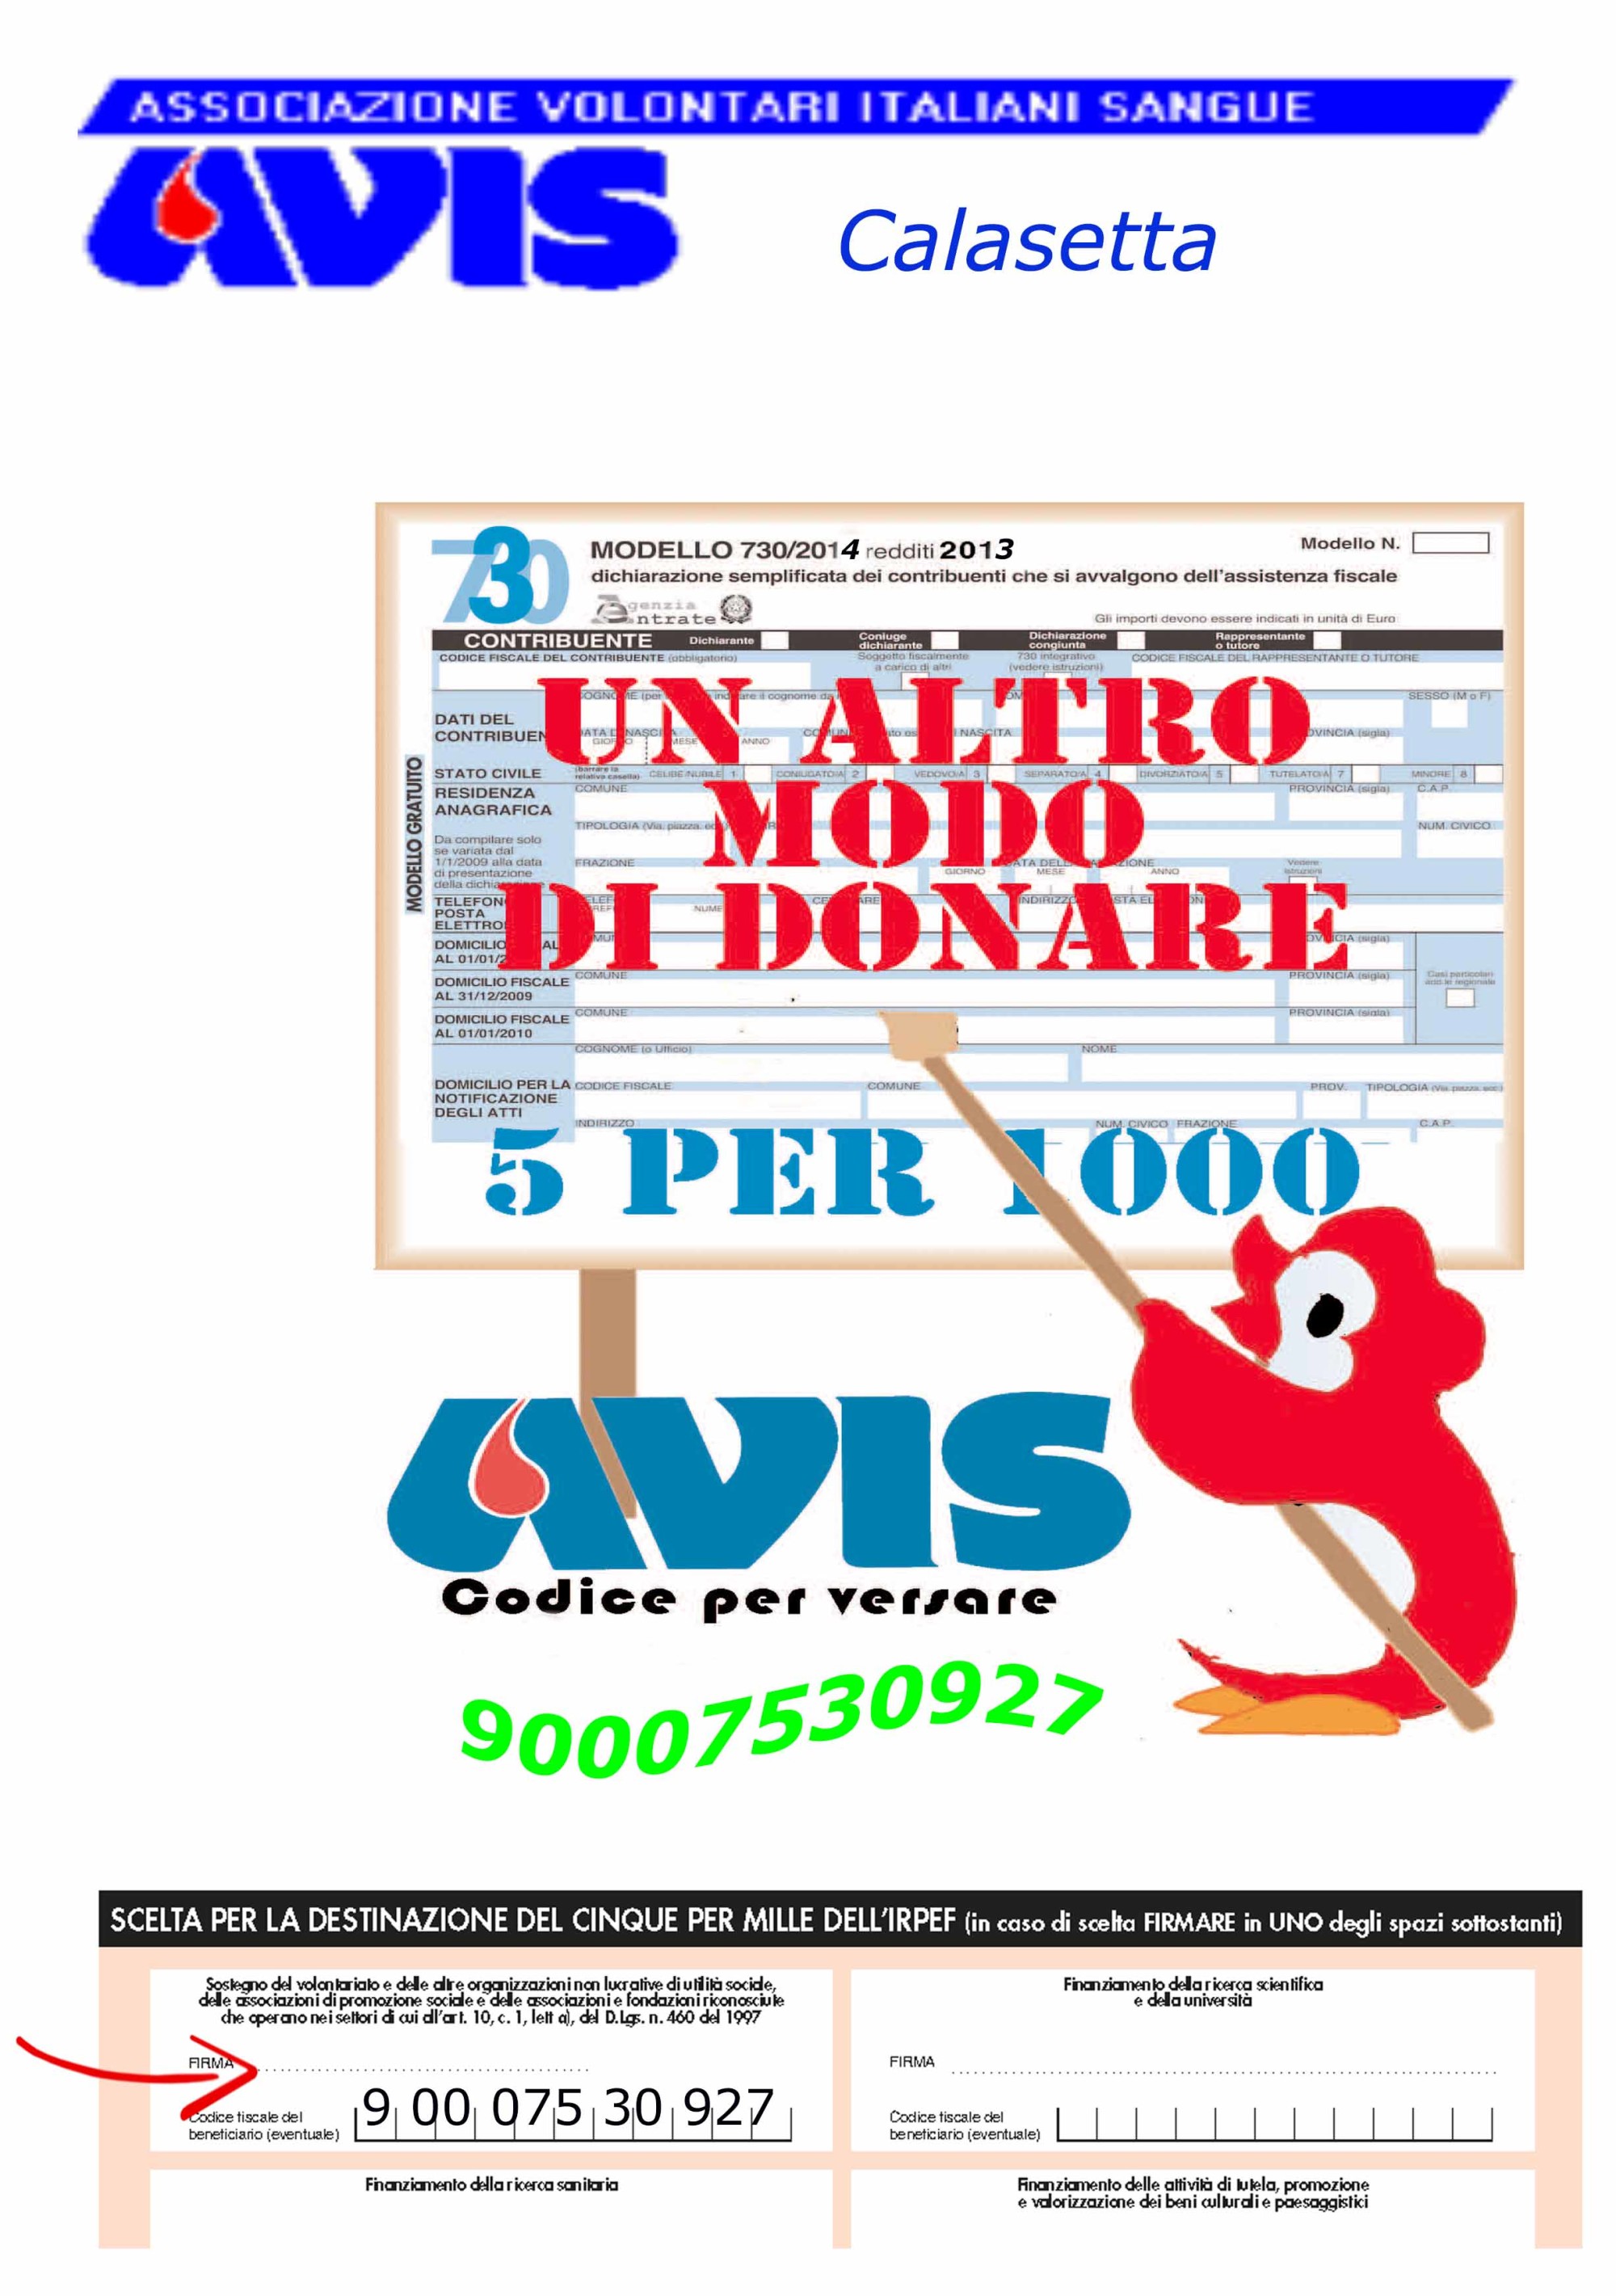 Donazioni AVIS Calasetta